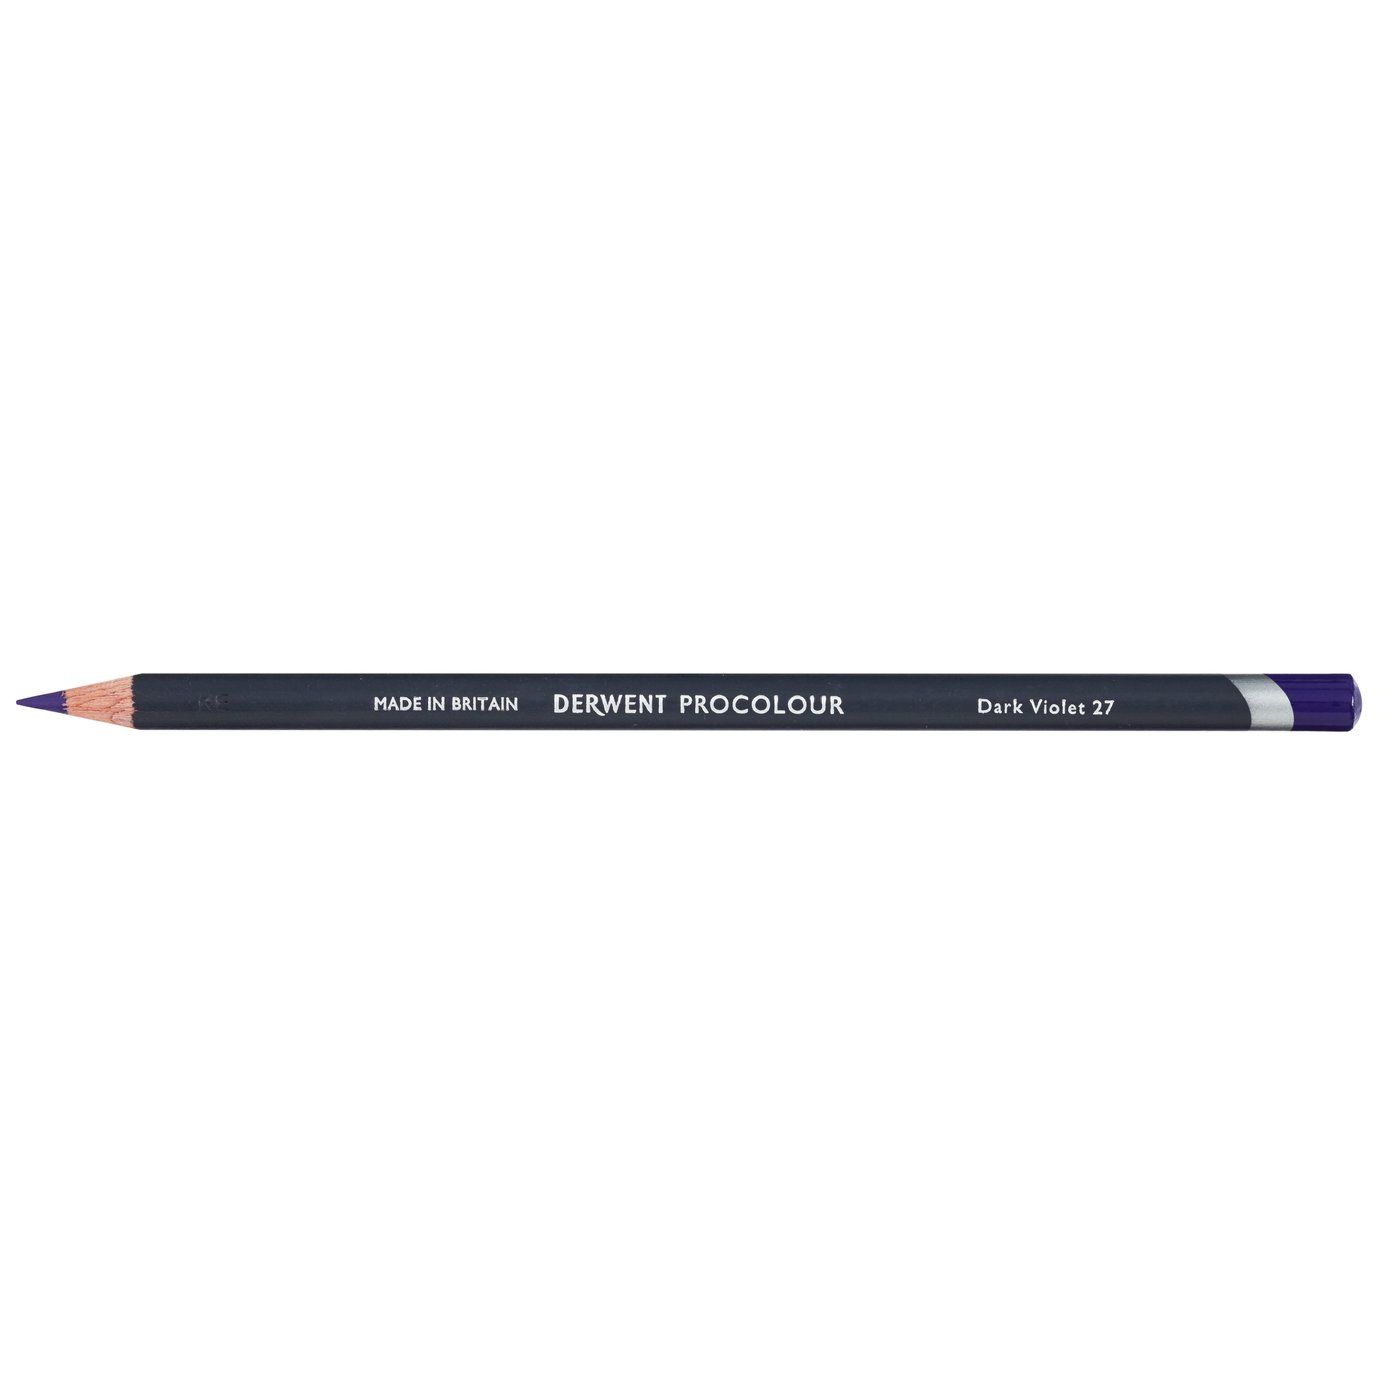 Derwent Procolour Pencil - 27 Dark Violet